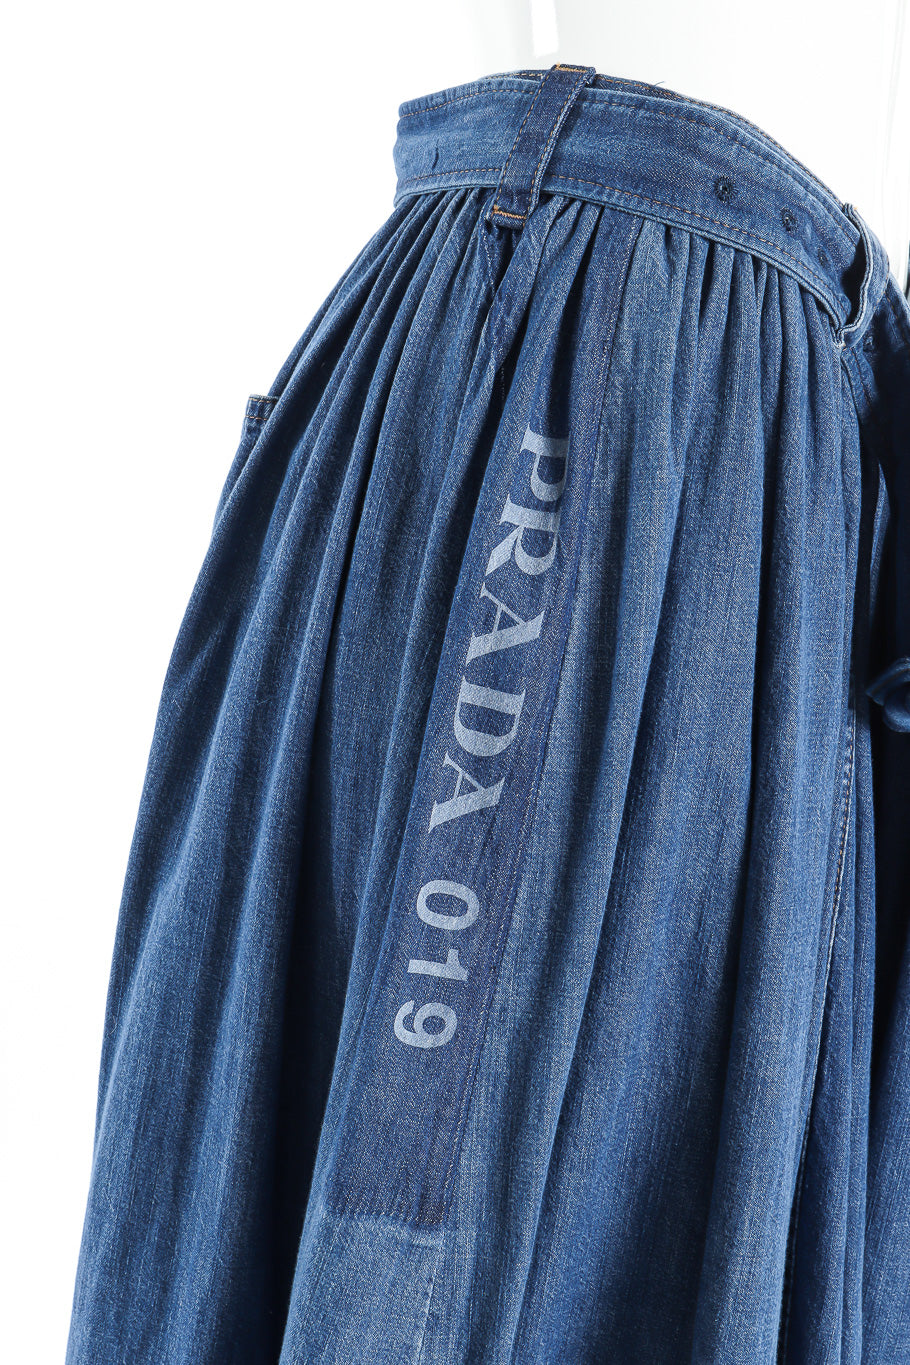 Prada denim peasant skirt side detail @recessla